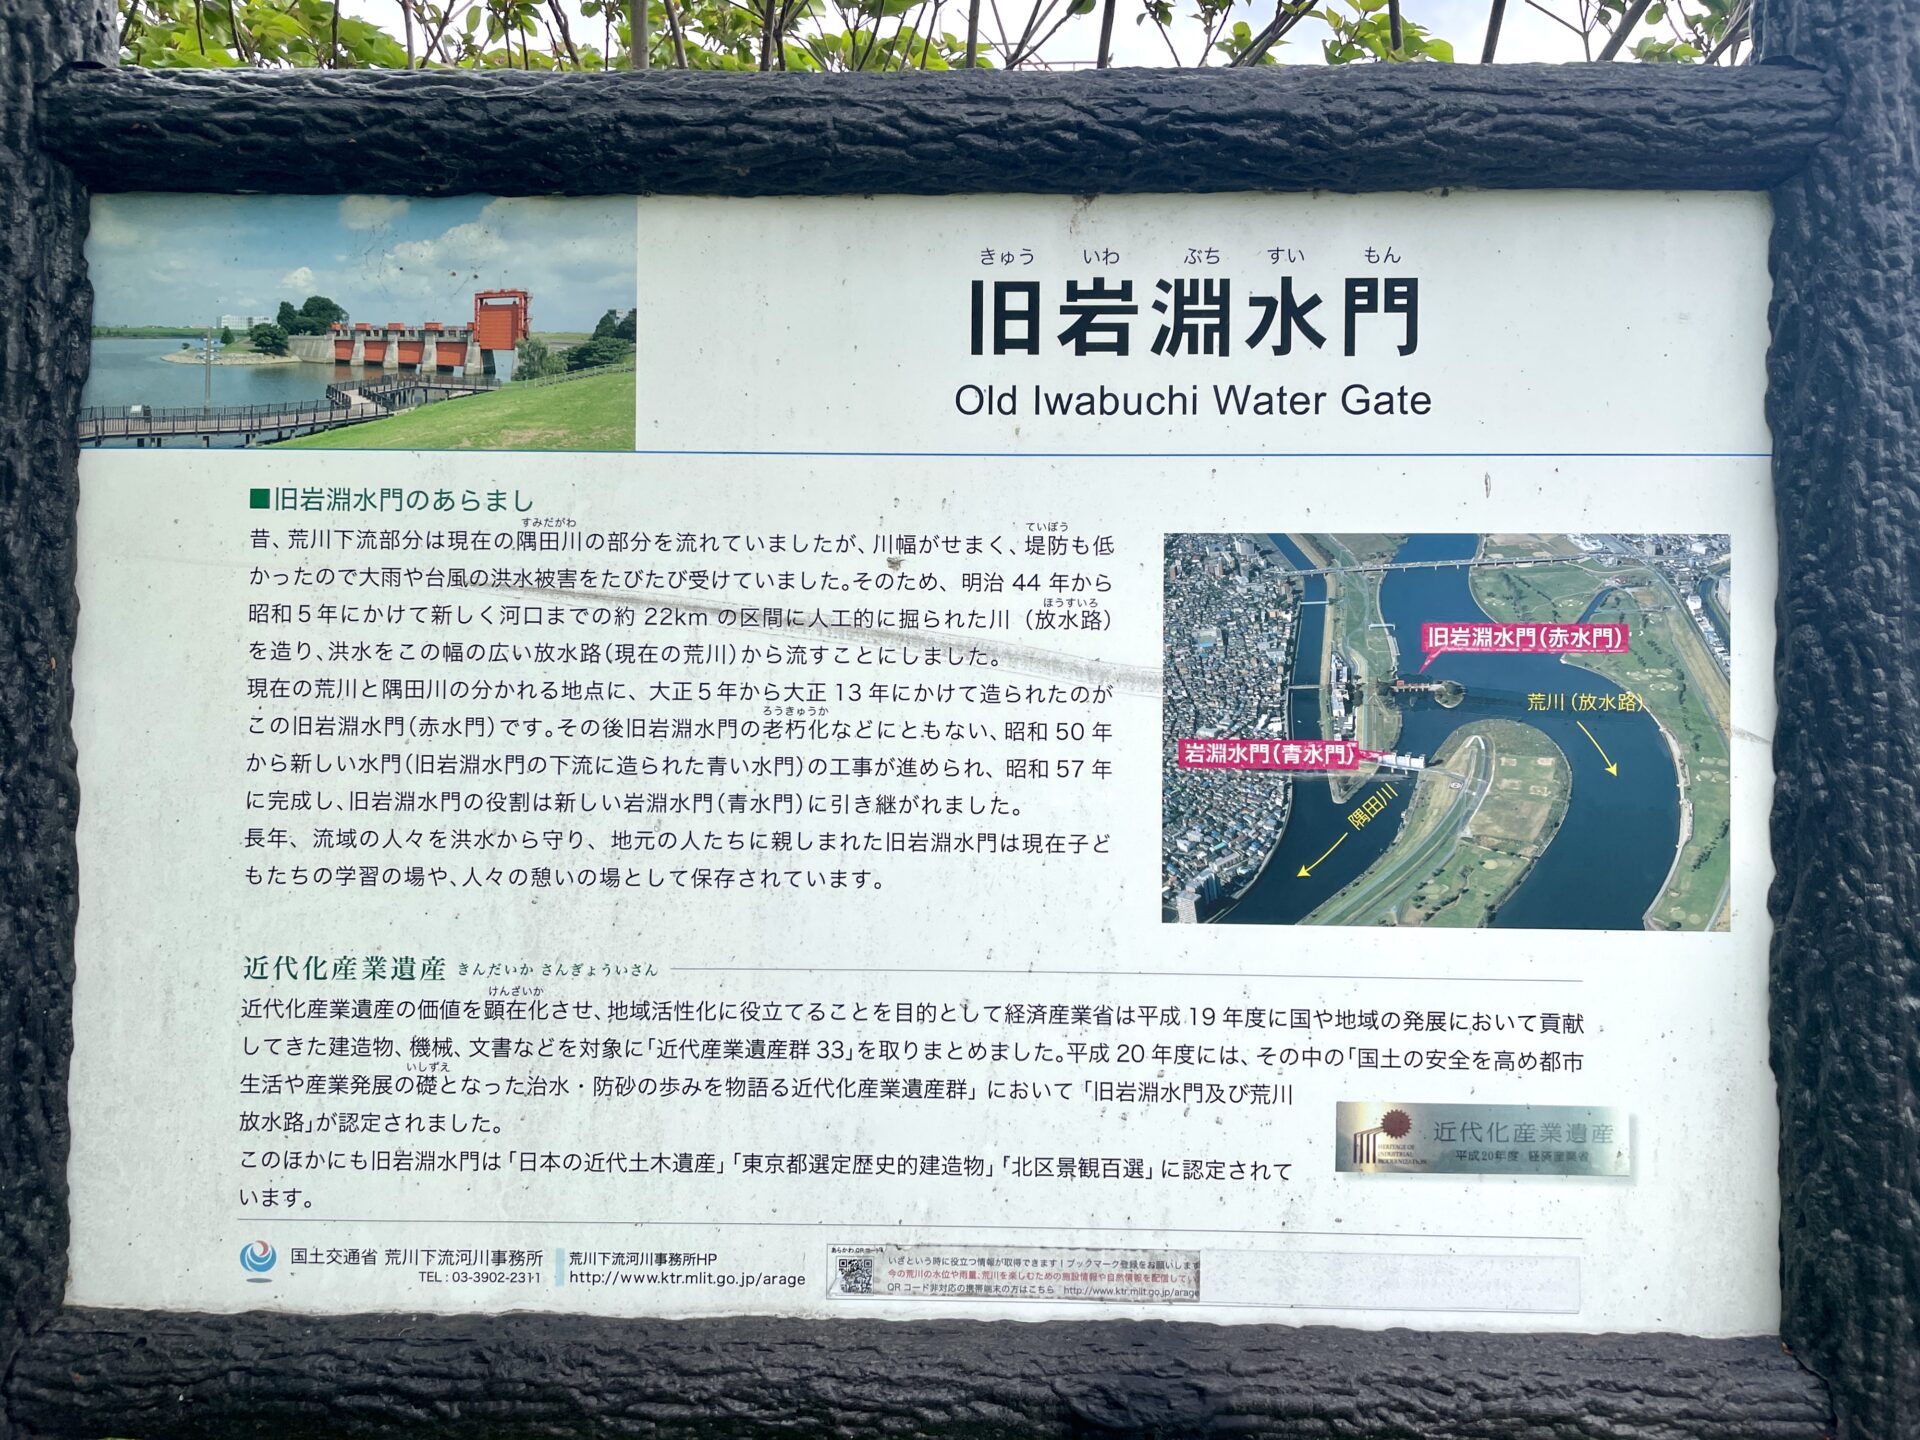 隅田川ウォーキング 旧岩淵水門の説明